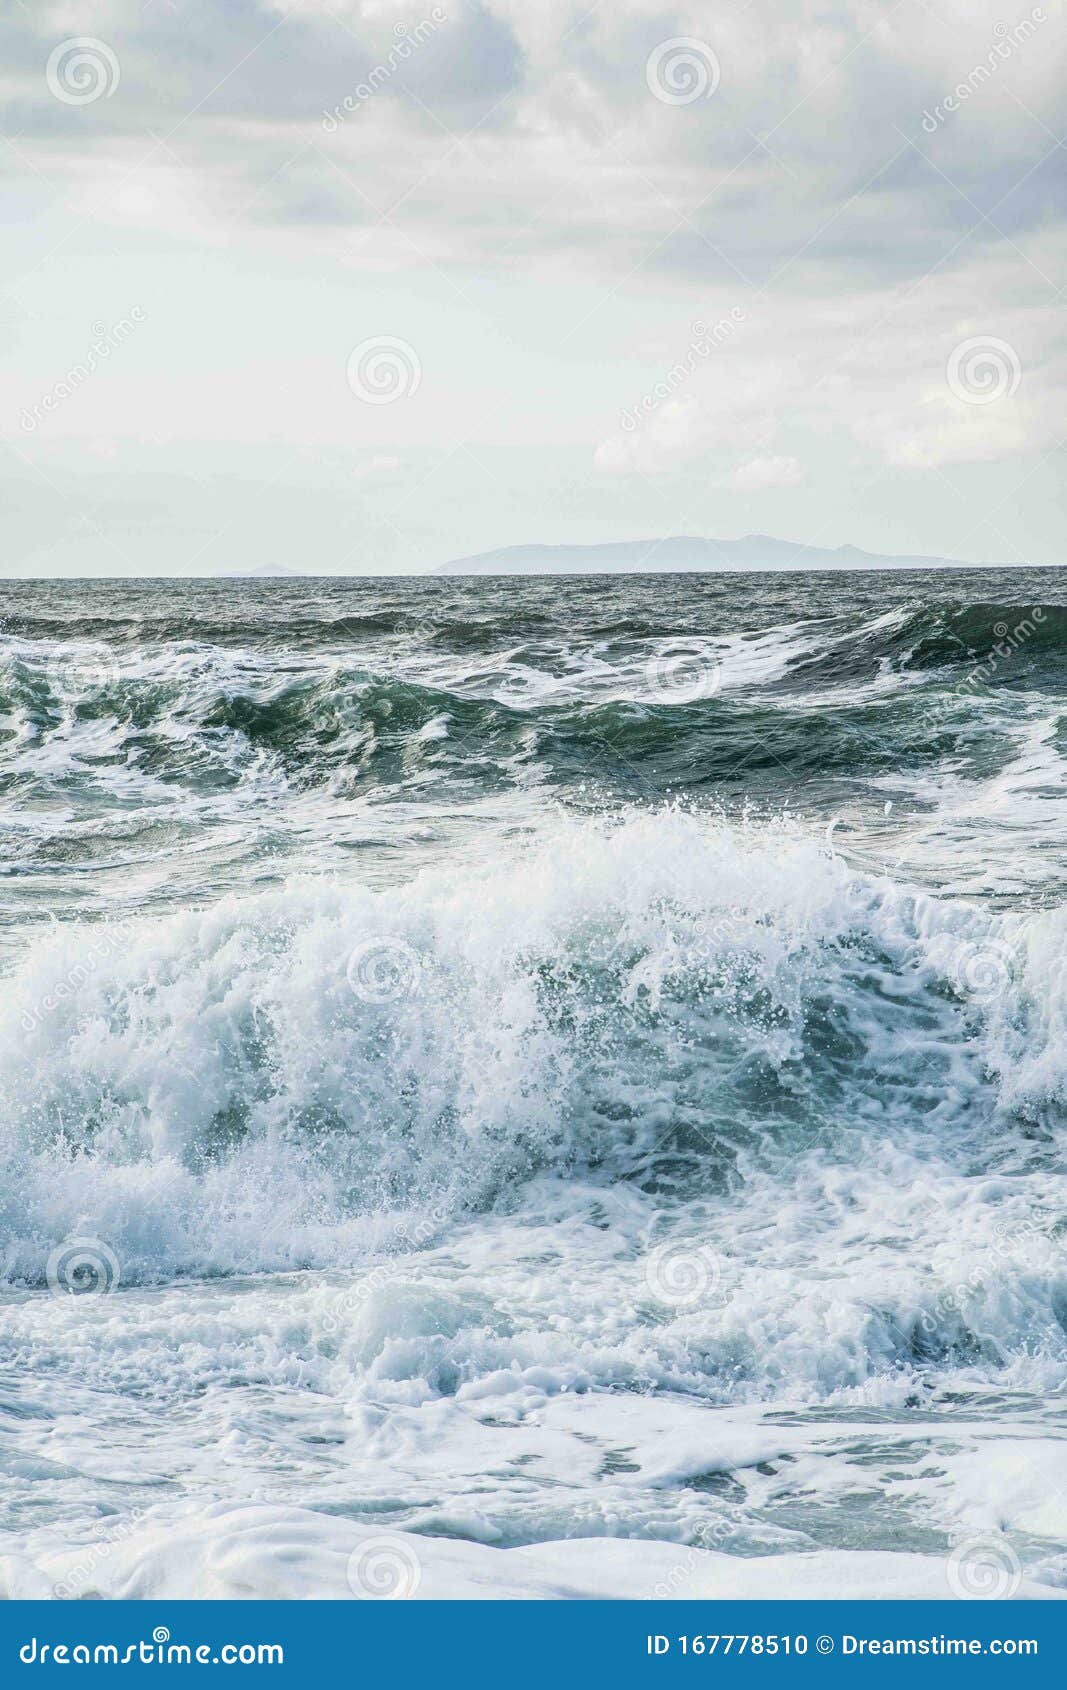 ocean sea water blue waves